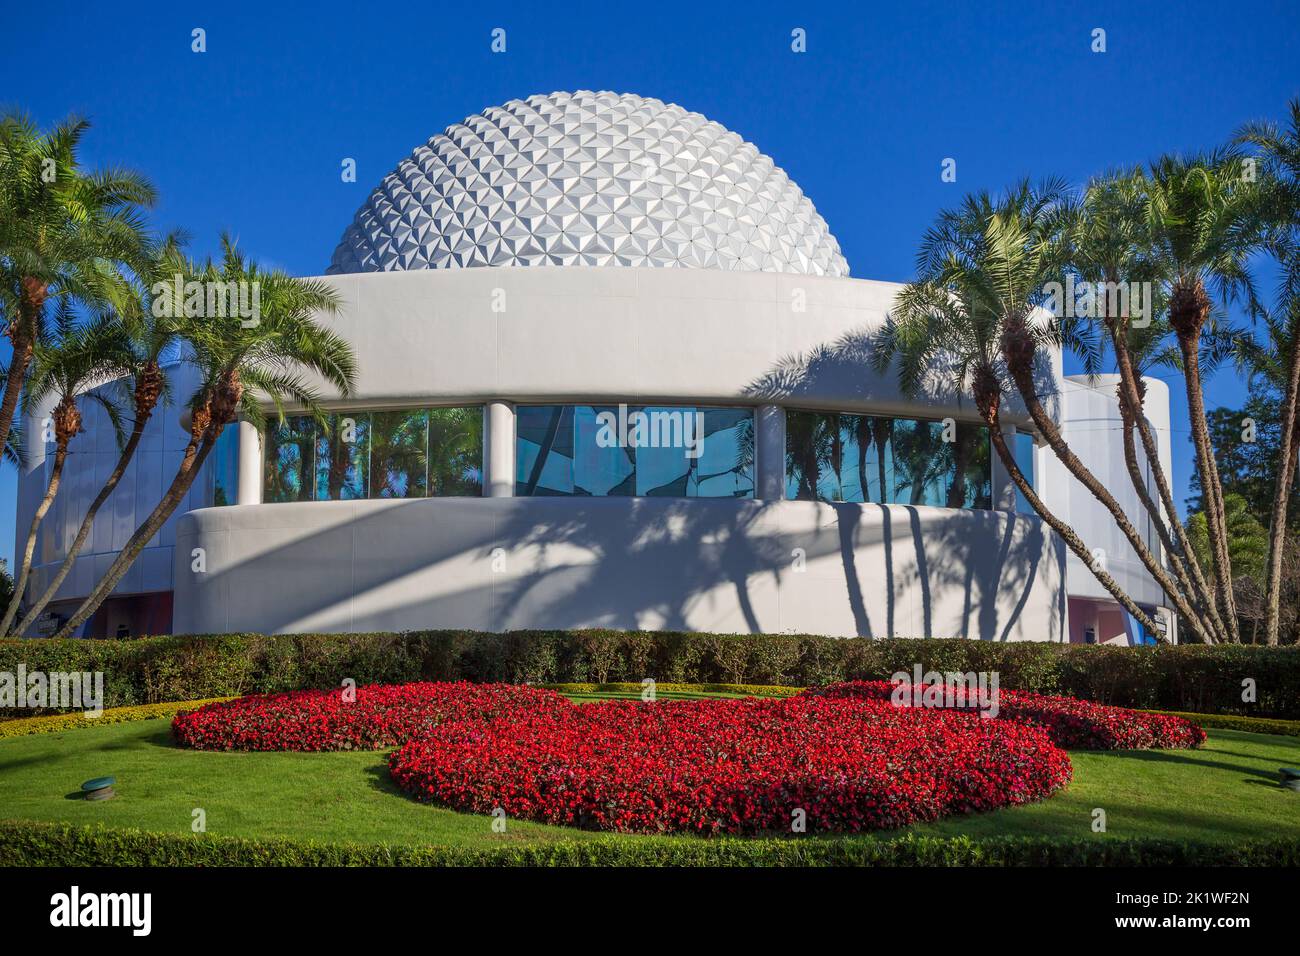 EThe Spaceship Earth dome at pcot Center, Orlando, Florida, USA. Stock Photo